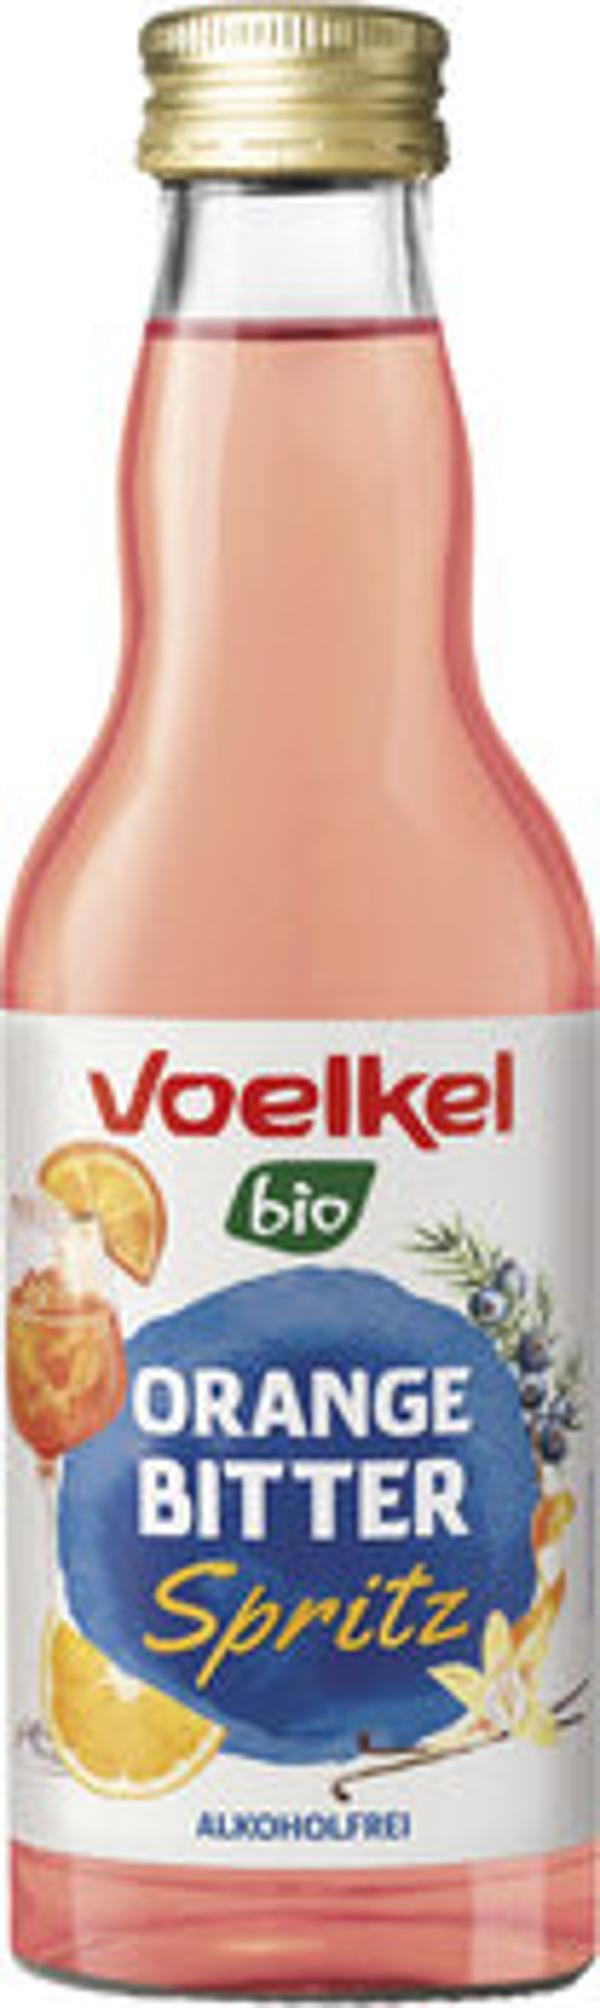 Produktfoto zu Orange Bitter Spritz von Voelkel